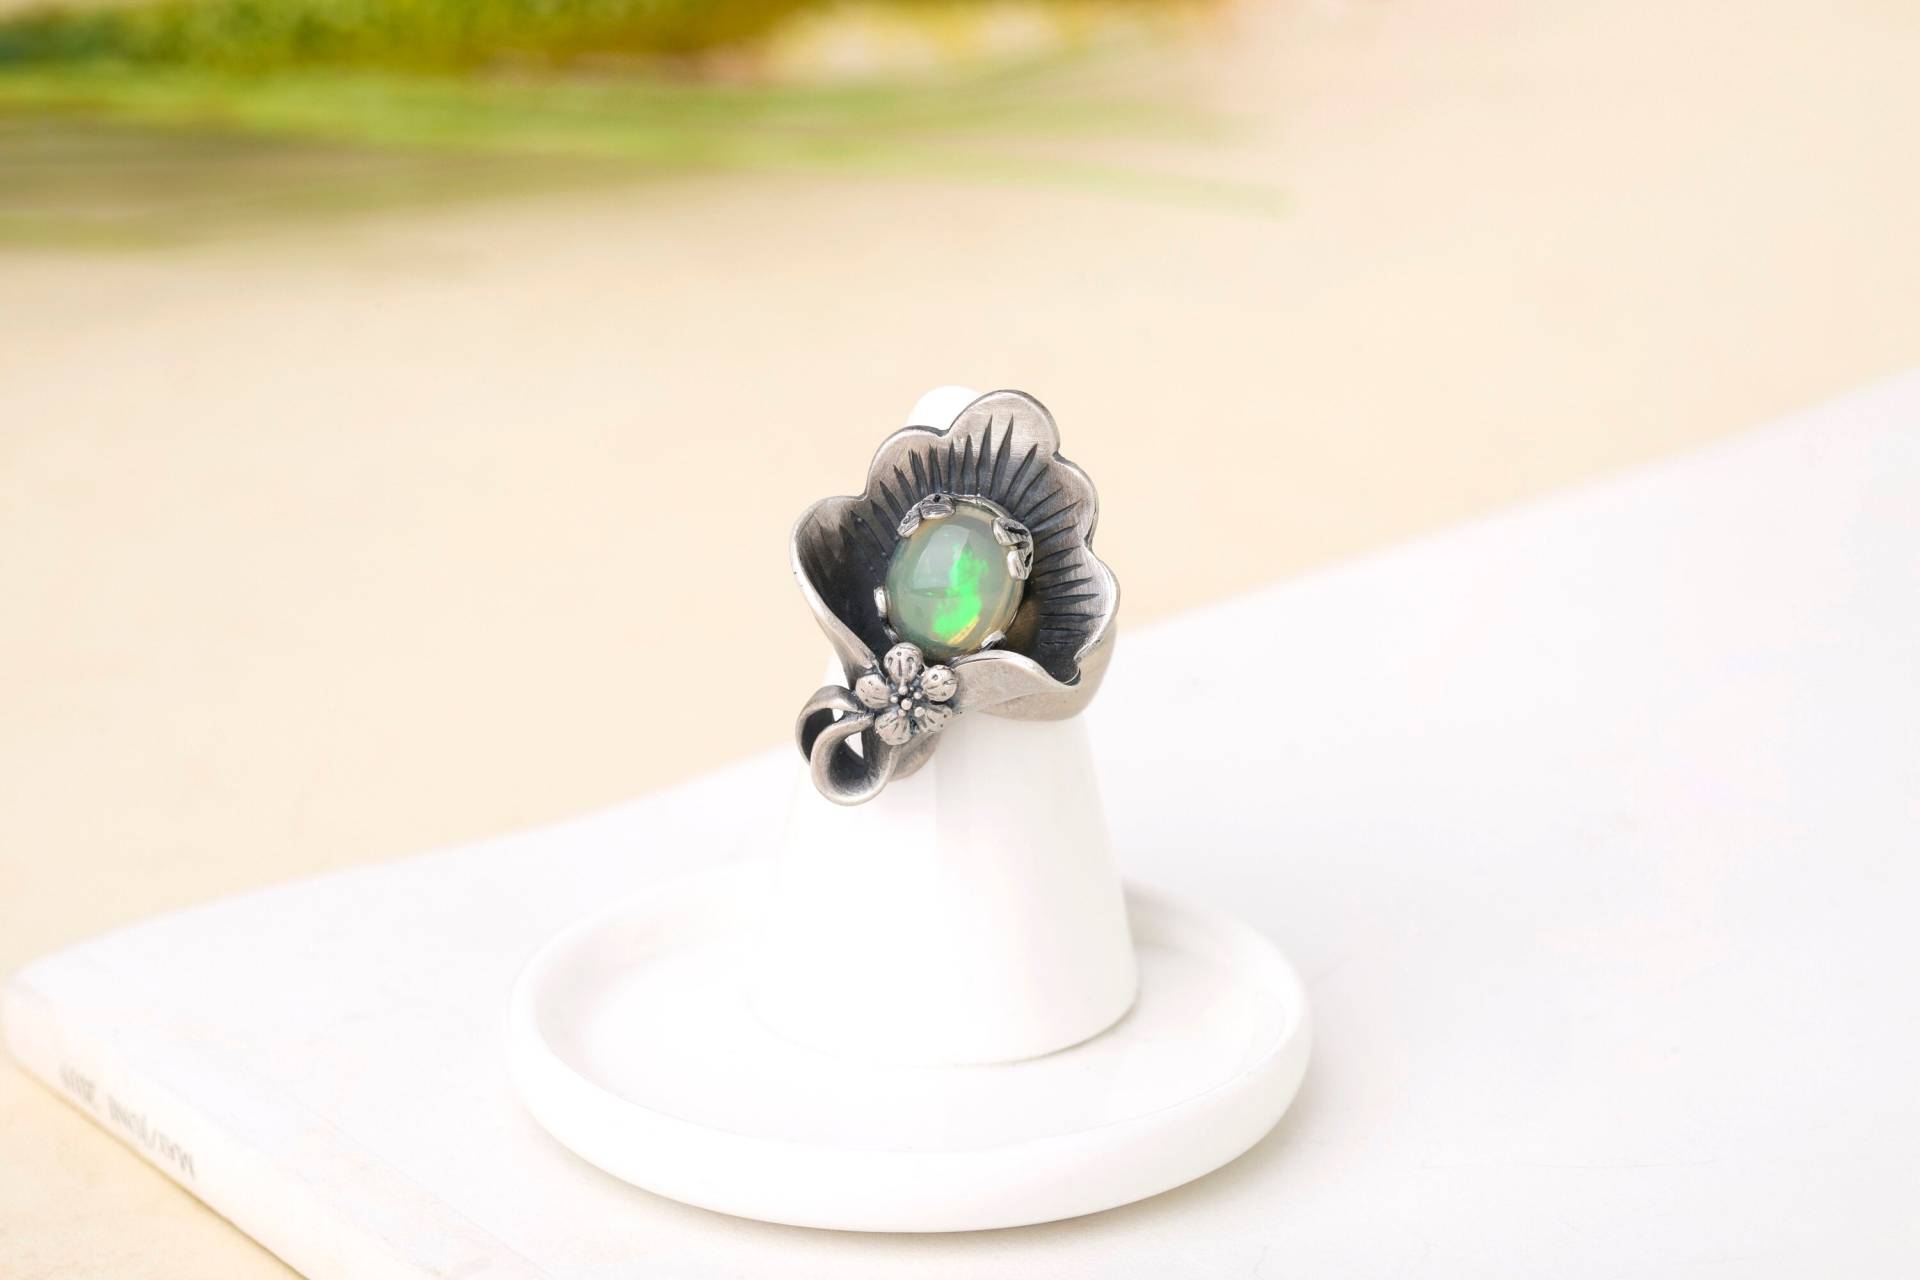 Silber Handwerk Edelstein Ring Von Naschenka Ihre Größe Hanbok Bestes Geschenk Jahrestag Korea von NASCHENKAseoul